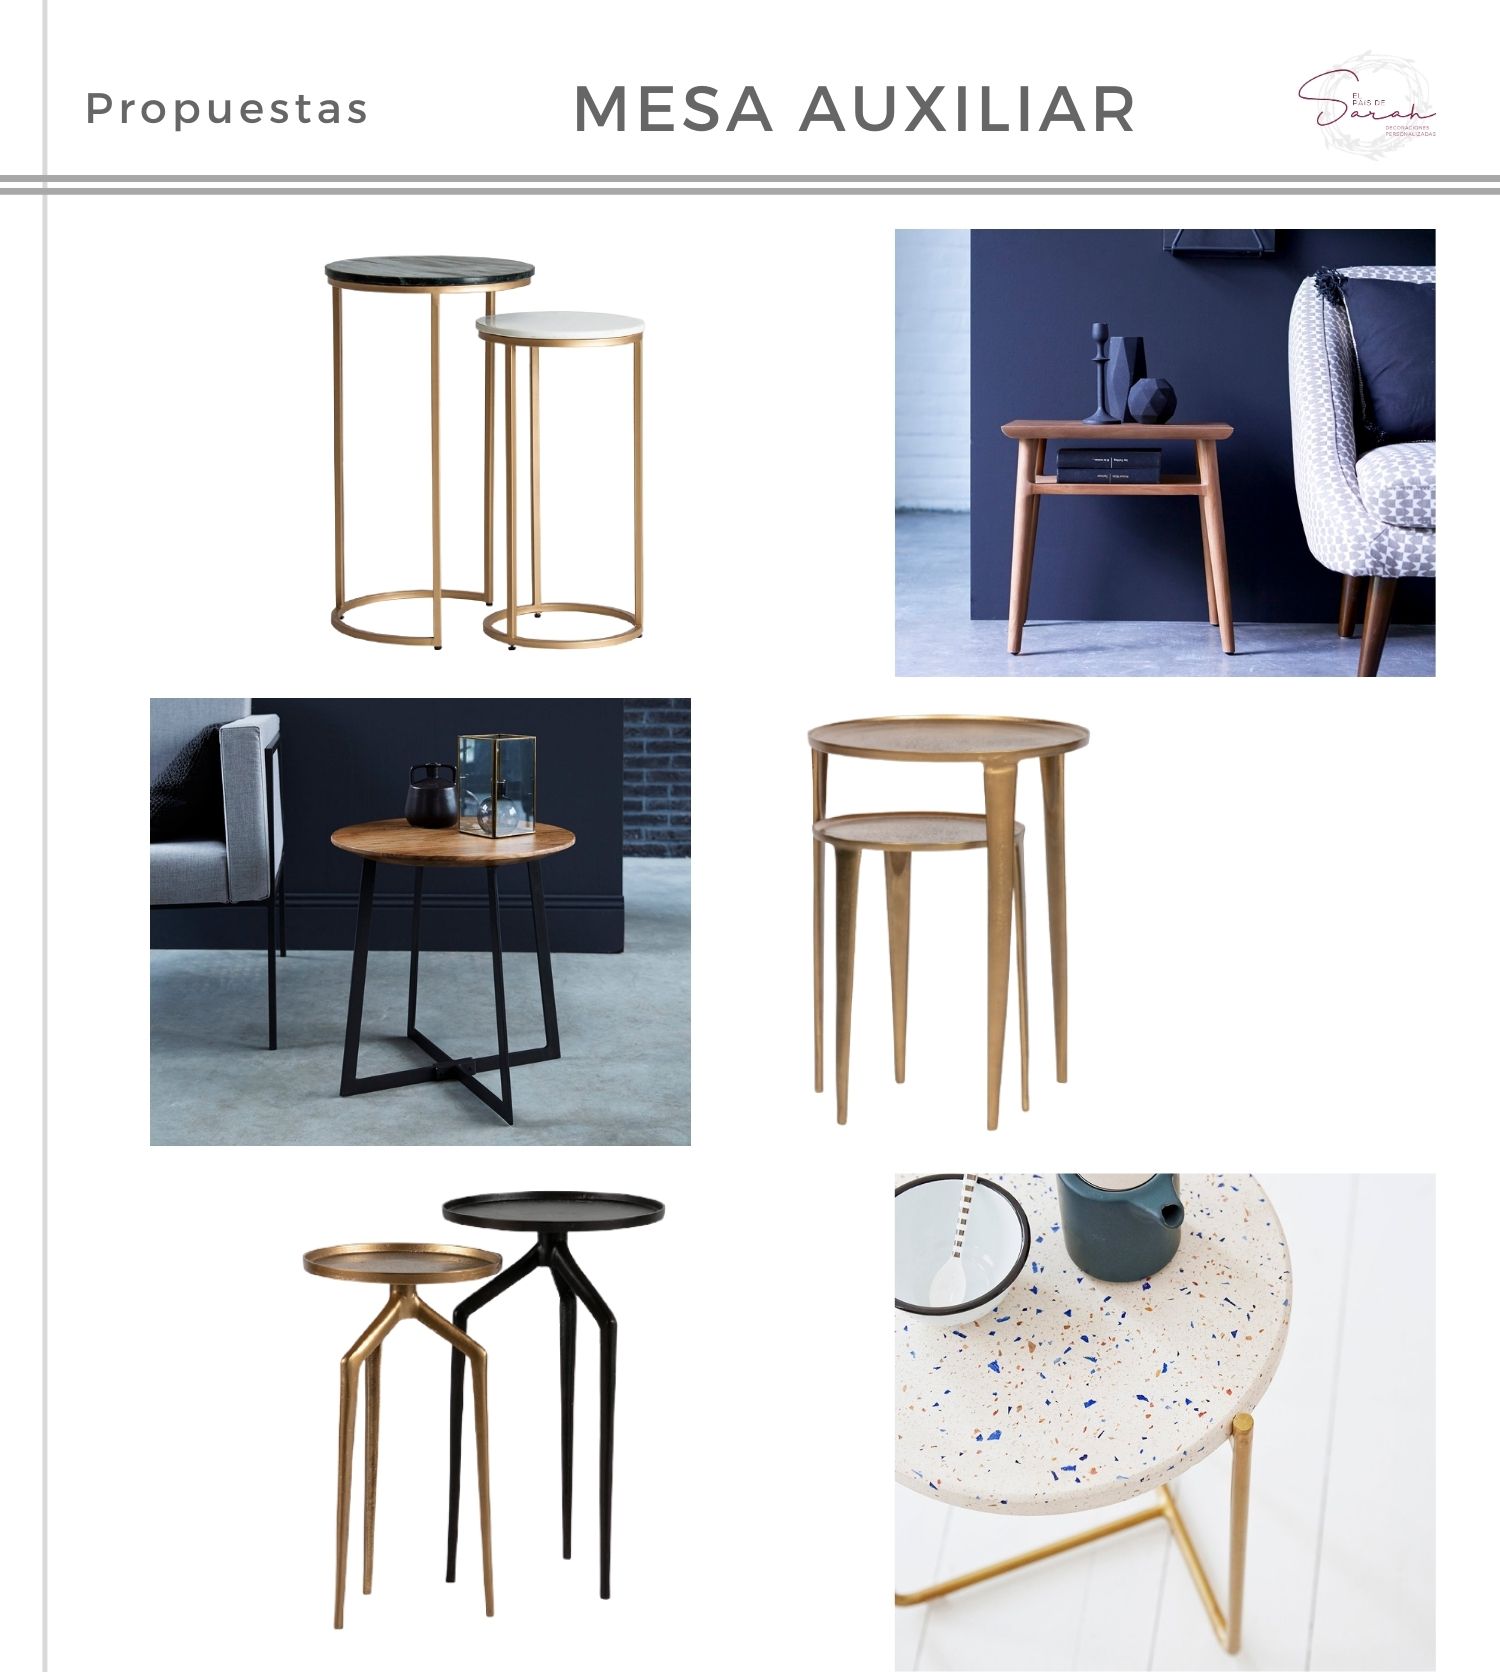 Mini_guía_para_ elegir_mesa_de_centro_perfecta_propuestas_shopping_auxiliares-09